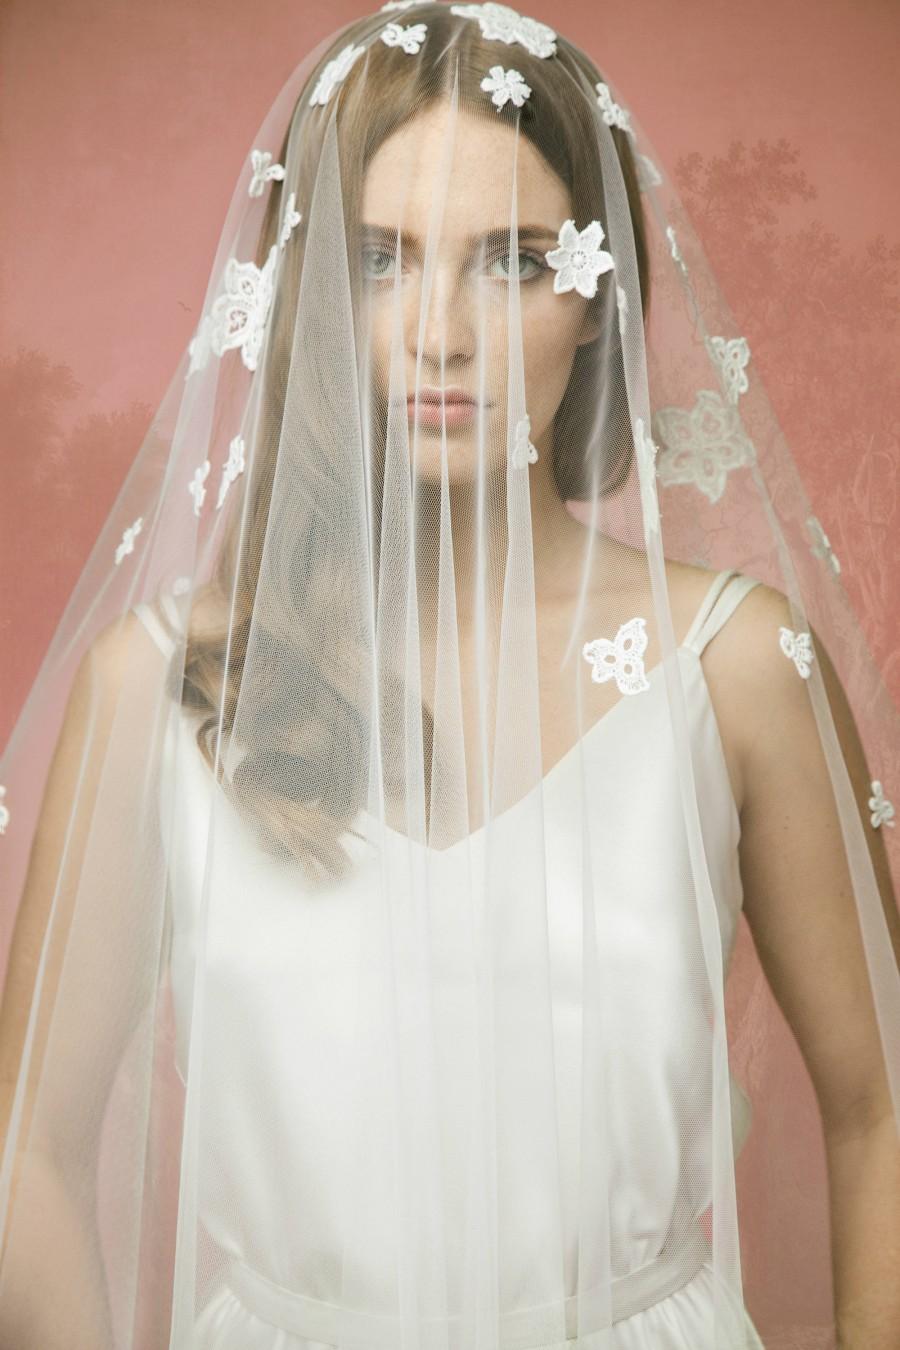 زفاف - Lace Bridal Veil A10, Lace Wedding Veil, Lace Applique Veil,Cotton Lace Veil, Tulle Lace Veil, Double Layer Veil, Cathedral Veil, Chapel